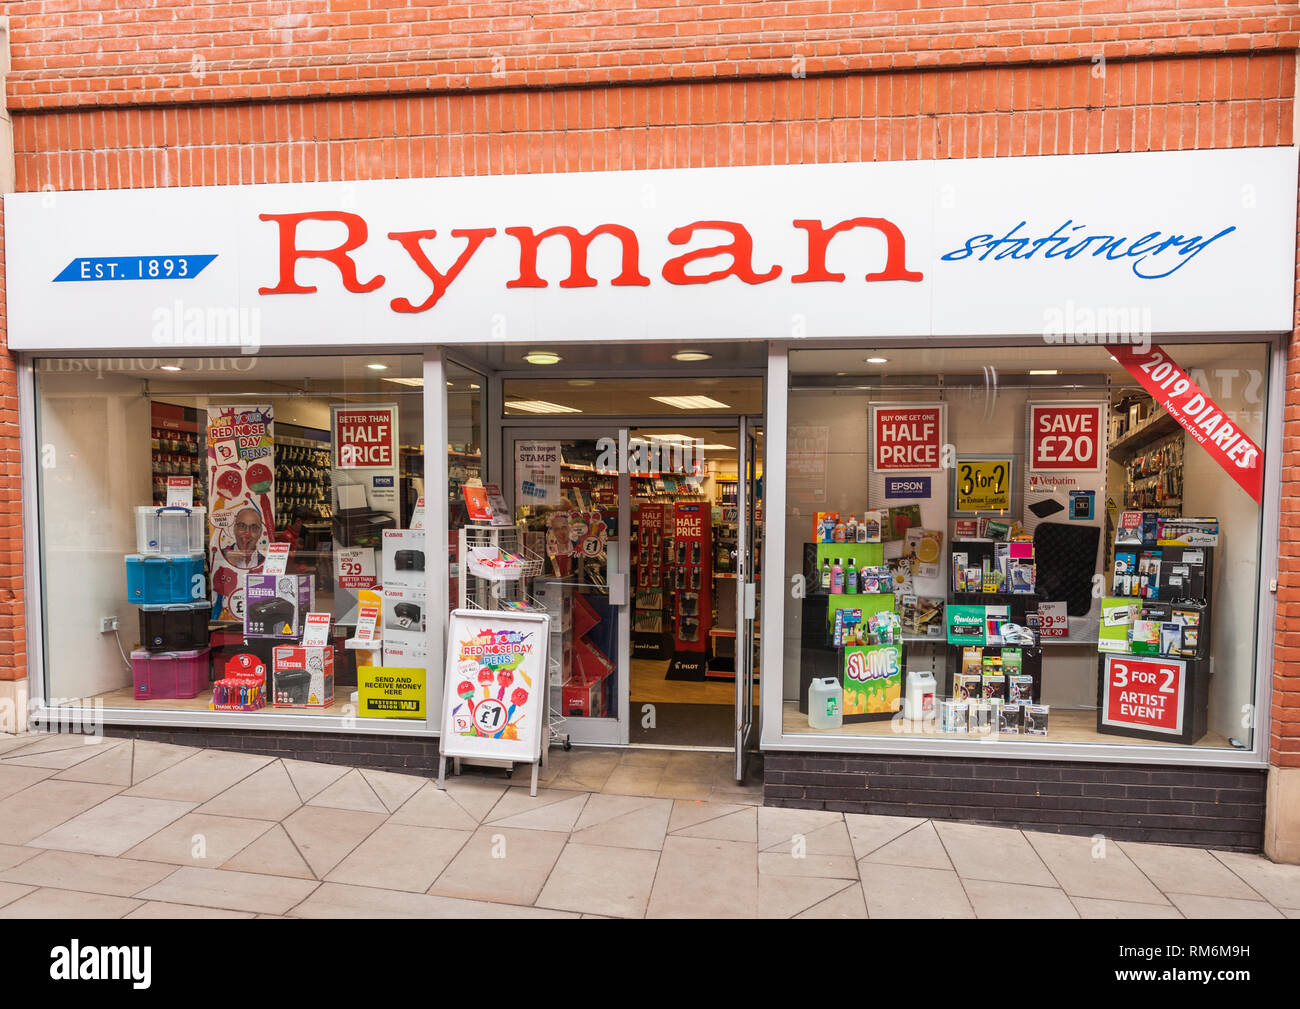 Ryman stationery shop in Durham,England,UK Stock Photo